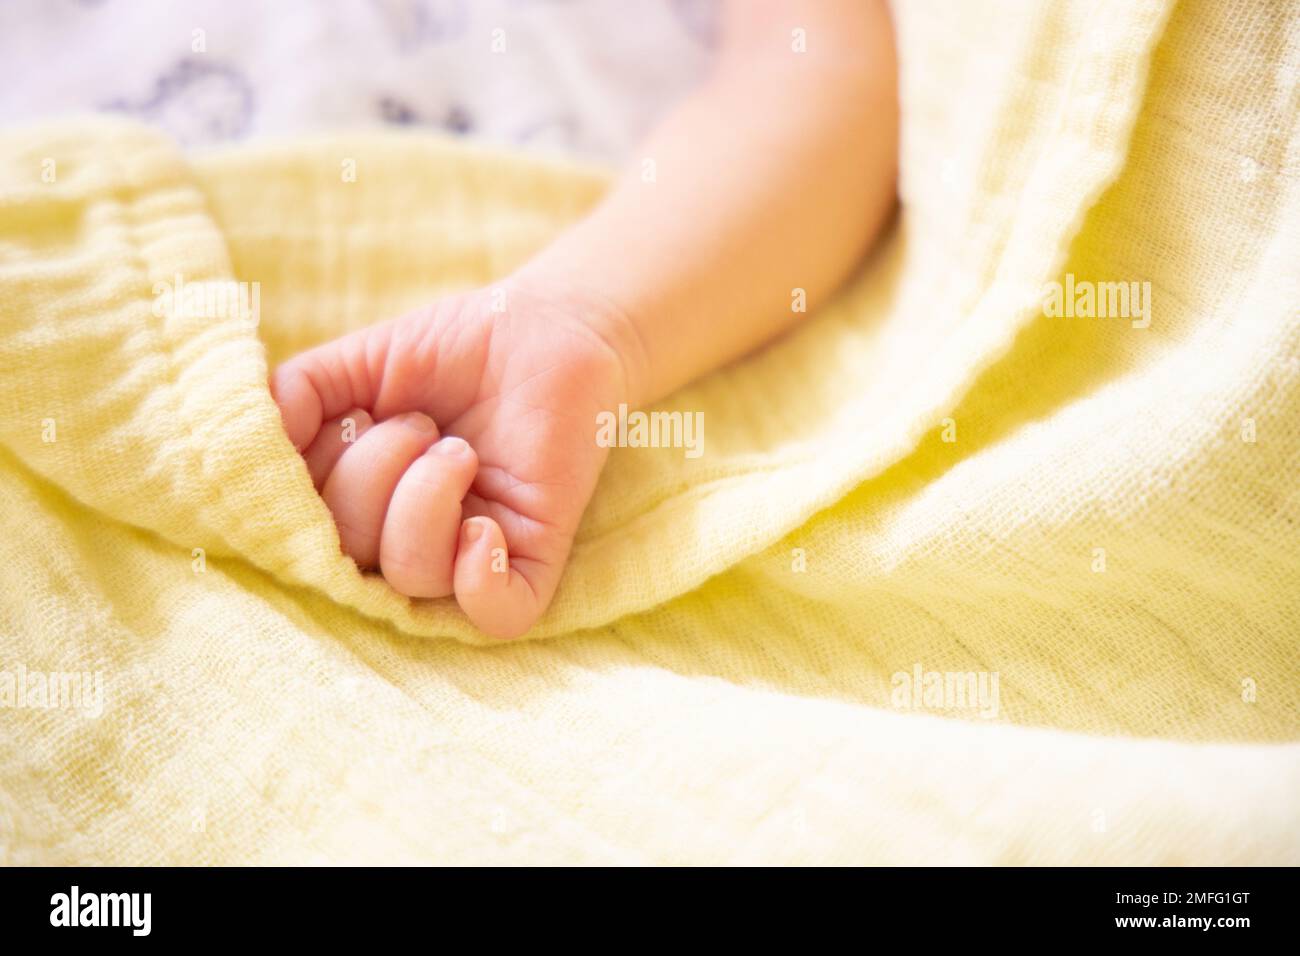 Nouveau-né prématuré main sur couverture souple jaune pastel mousseline.  Espace de copie, espace pour le texte Photo Stock - Alamy